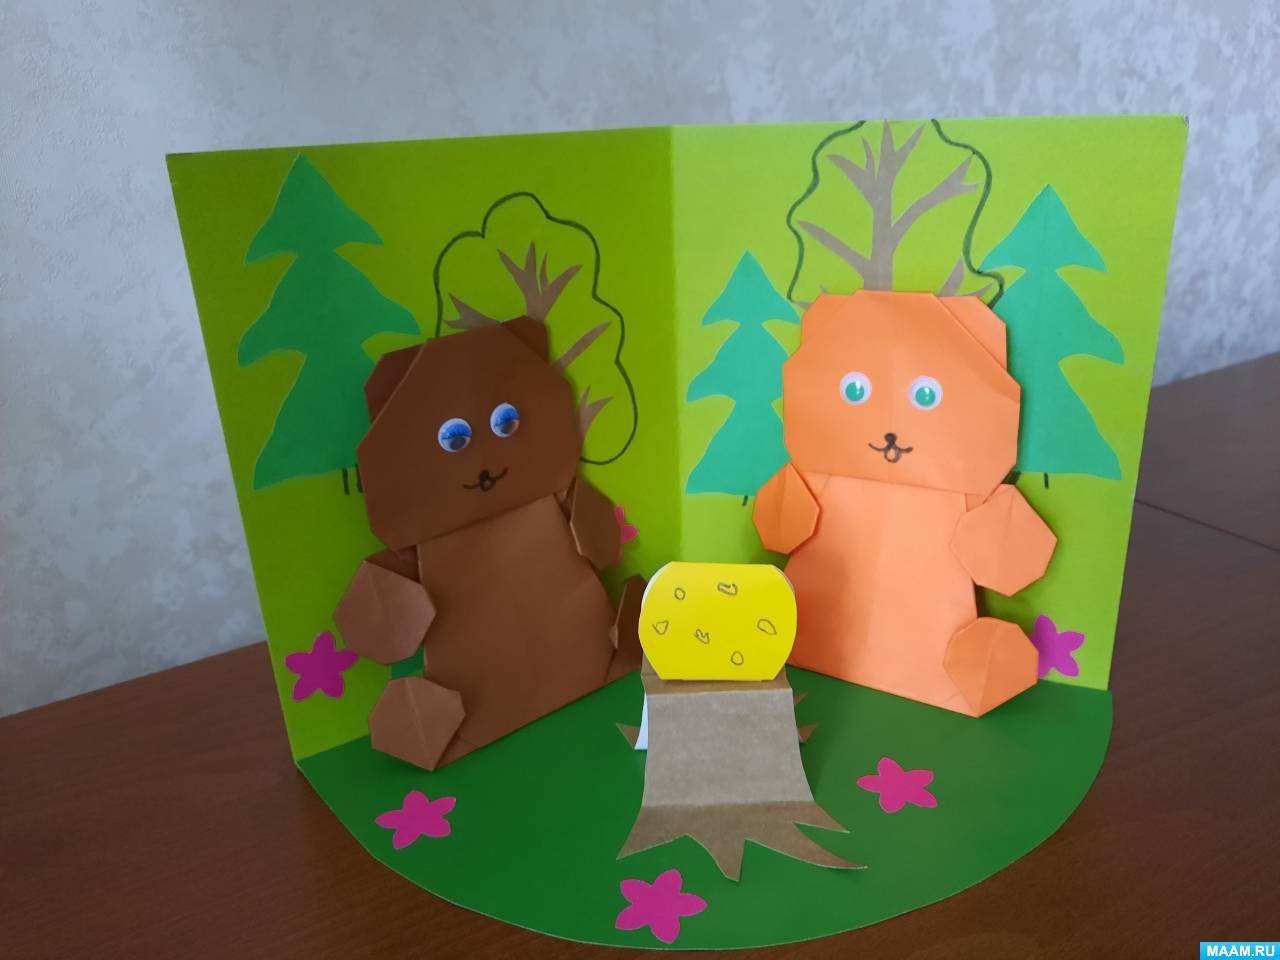 Мастер-класс по конструированию из бумаги «Два жадных медвежонка» для детей старшего дошкольного возраста